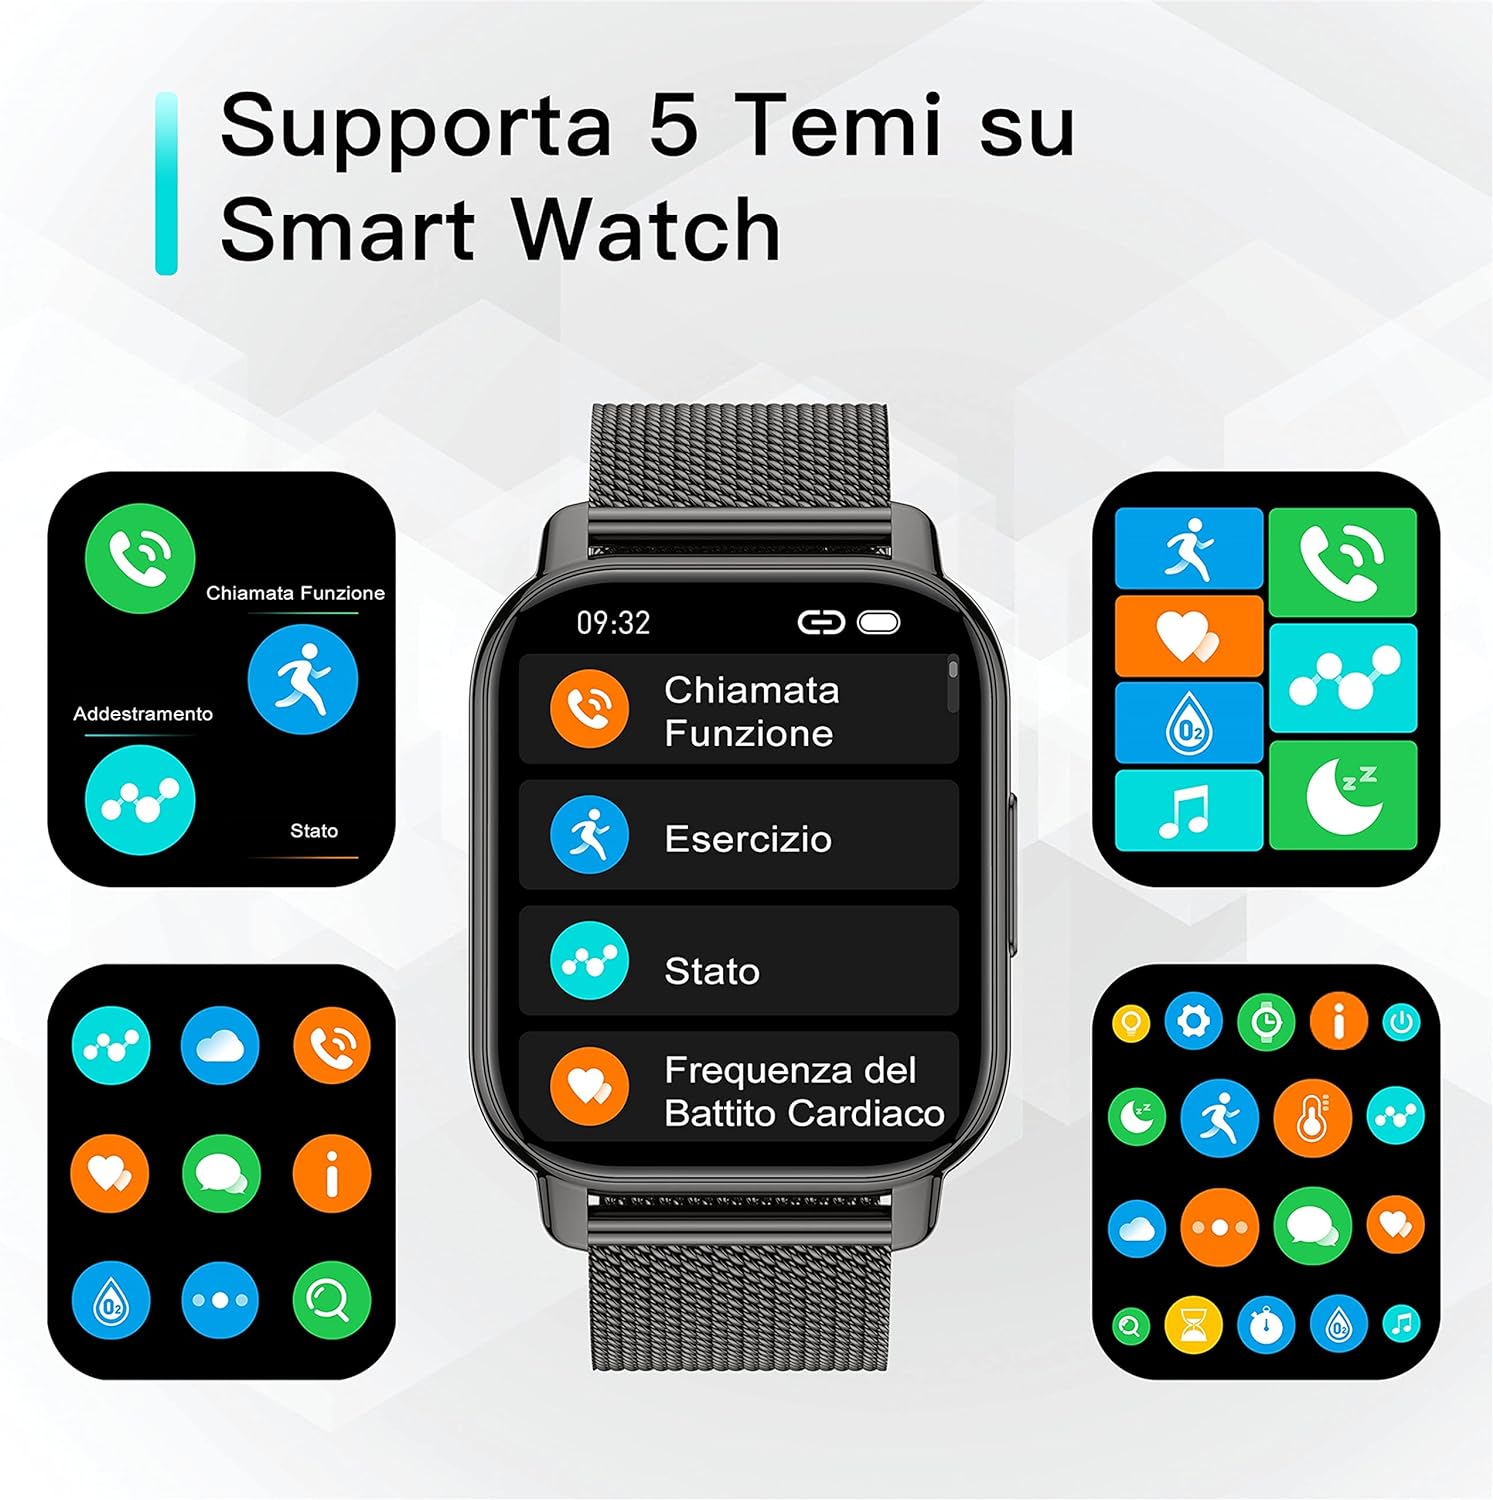 Smartwatch con assistente vocale, chiamate e notifiche al polso SVENDUTO su   - Webnews